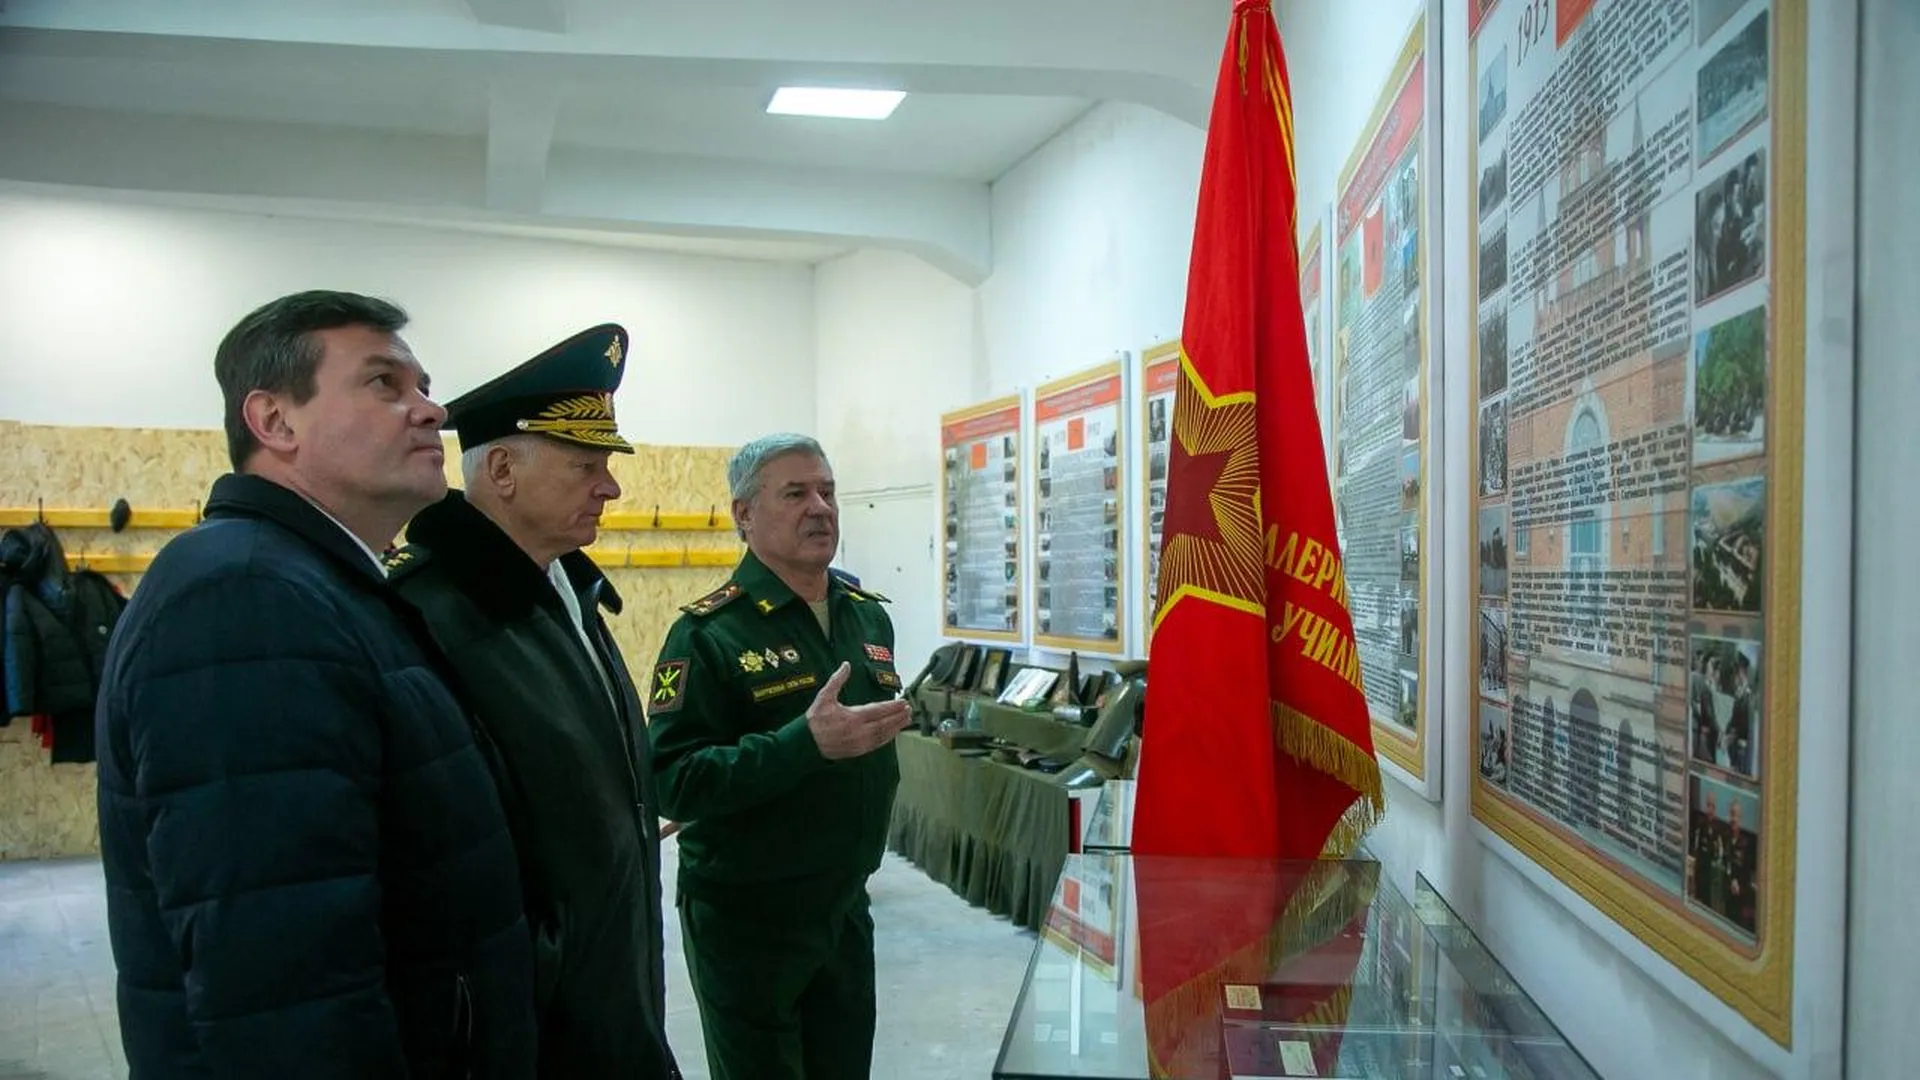 Музей истории артиллерии и артиллерийского образования России появится в Коломне